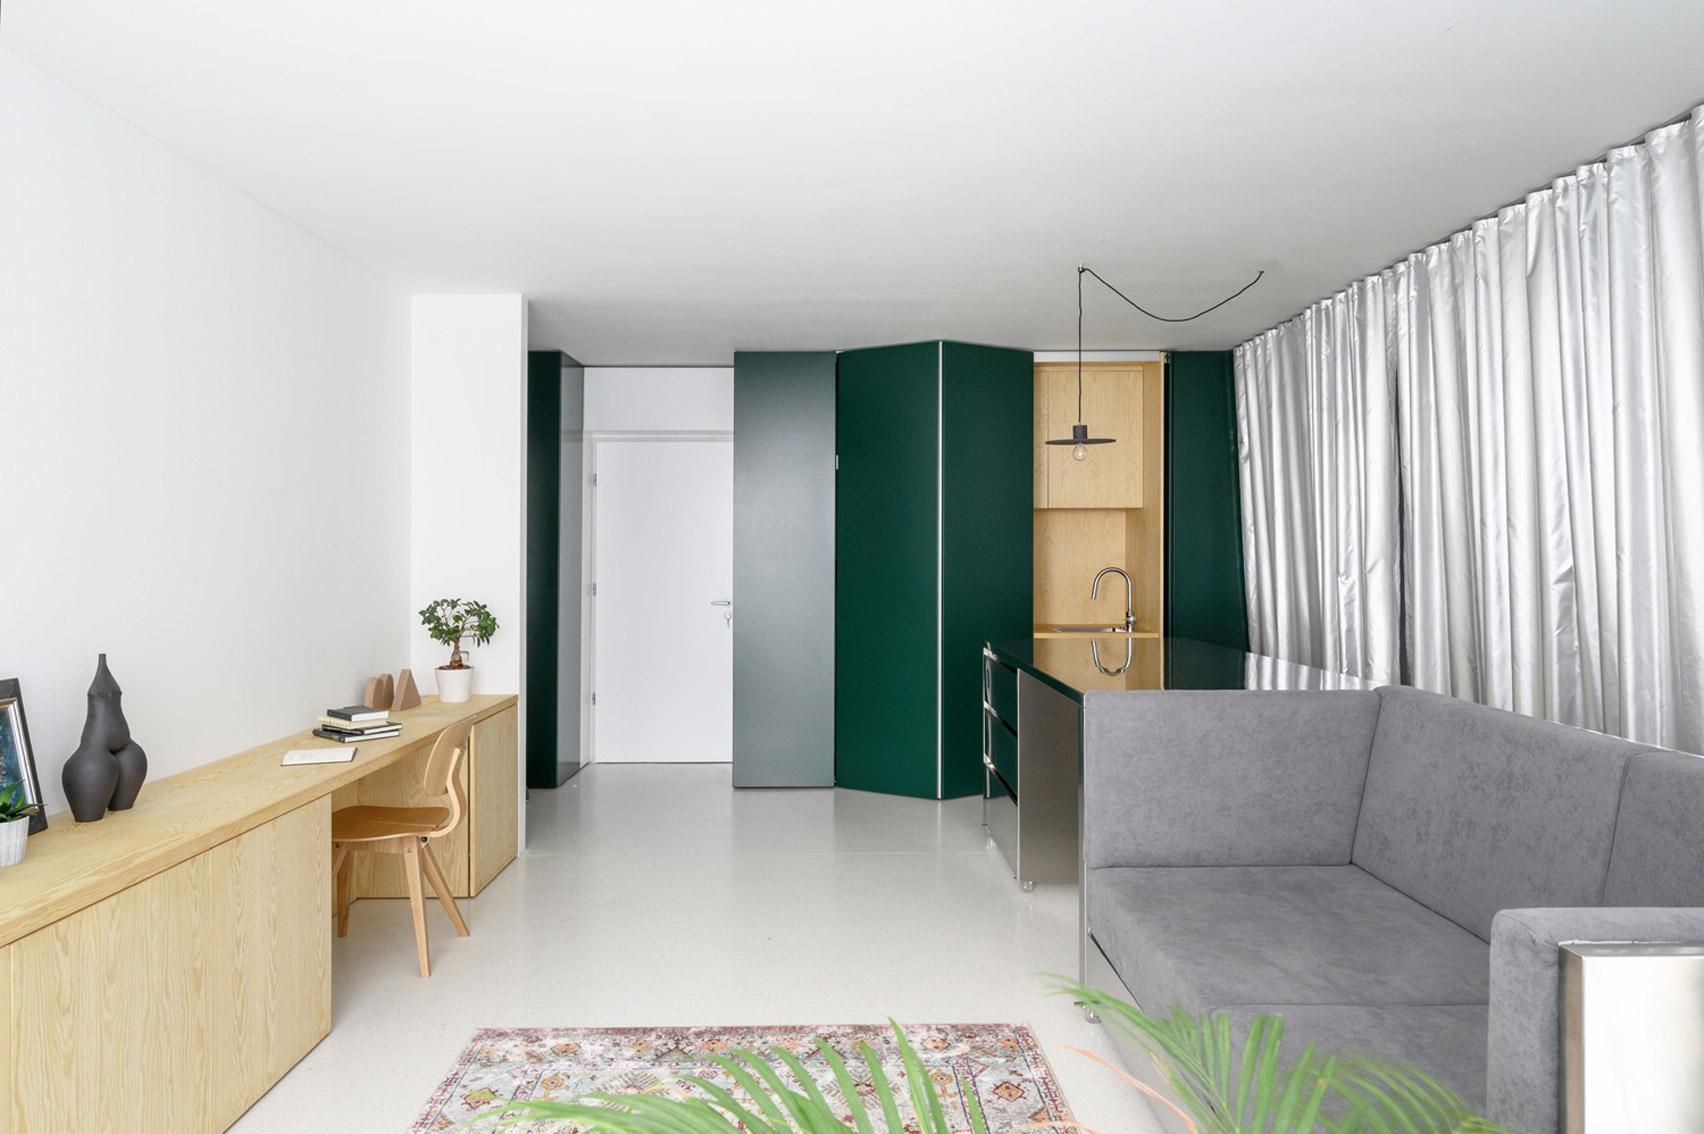 Багатофункціональні меблі та собака: фото стильної двокімнатної квартири зі Словенії